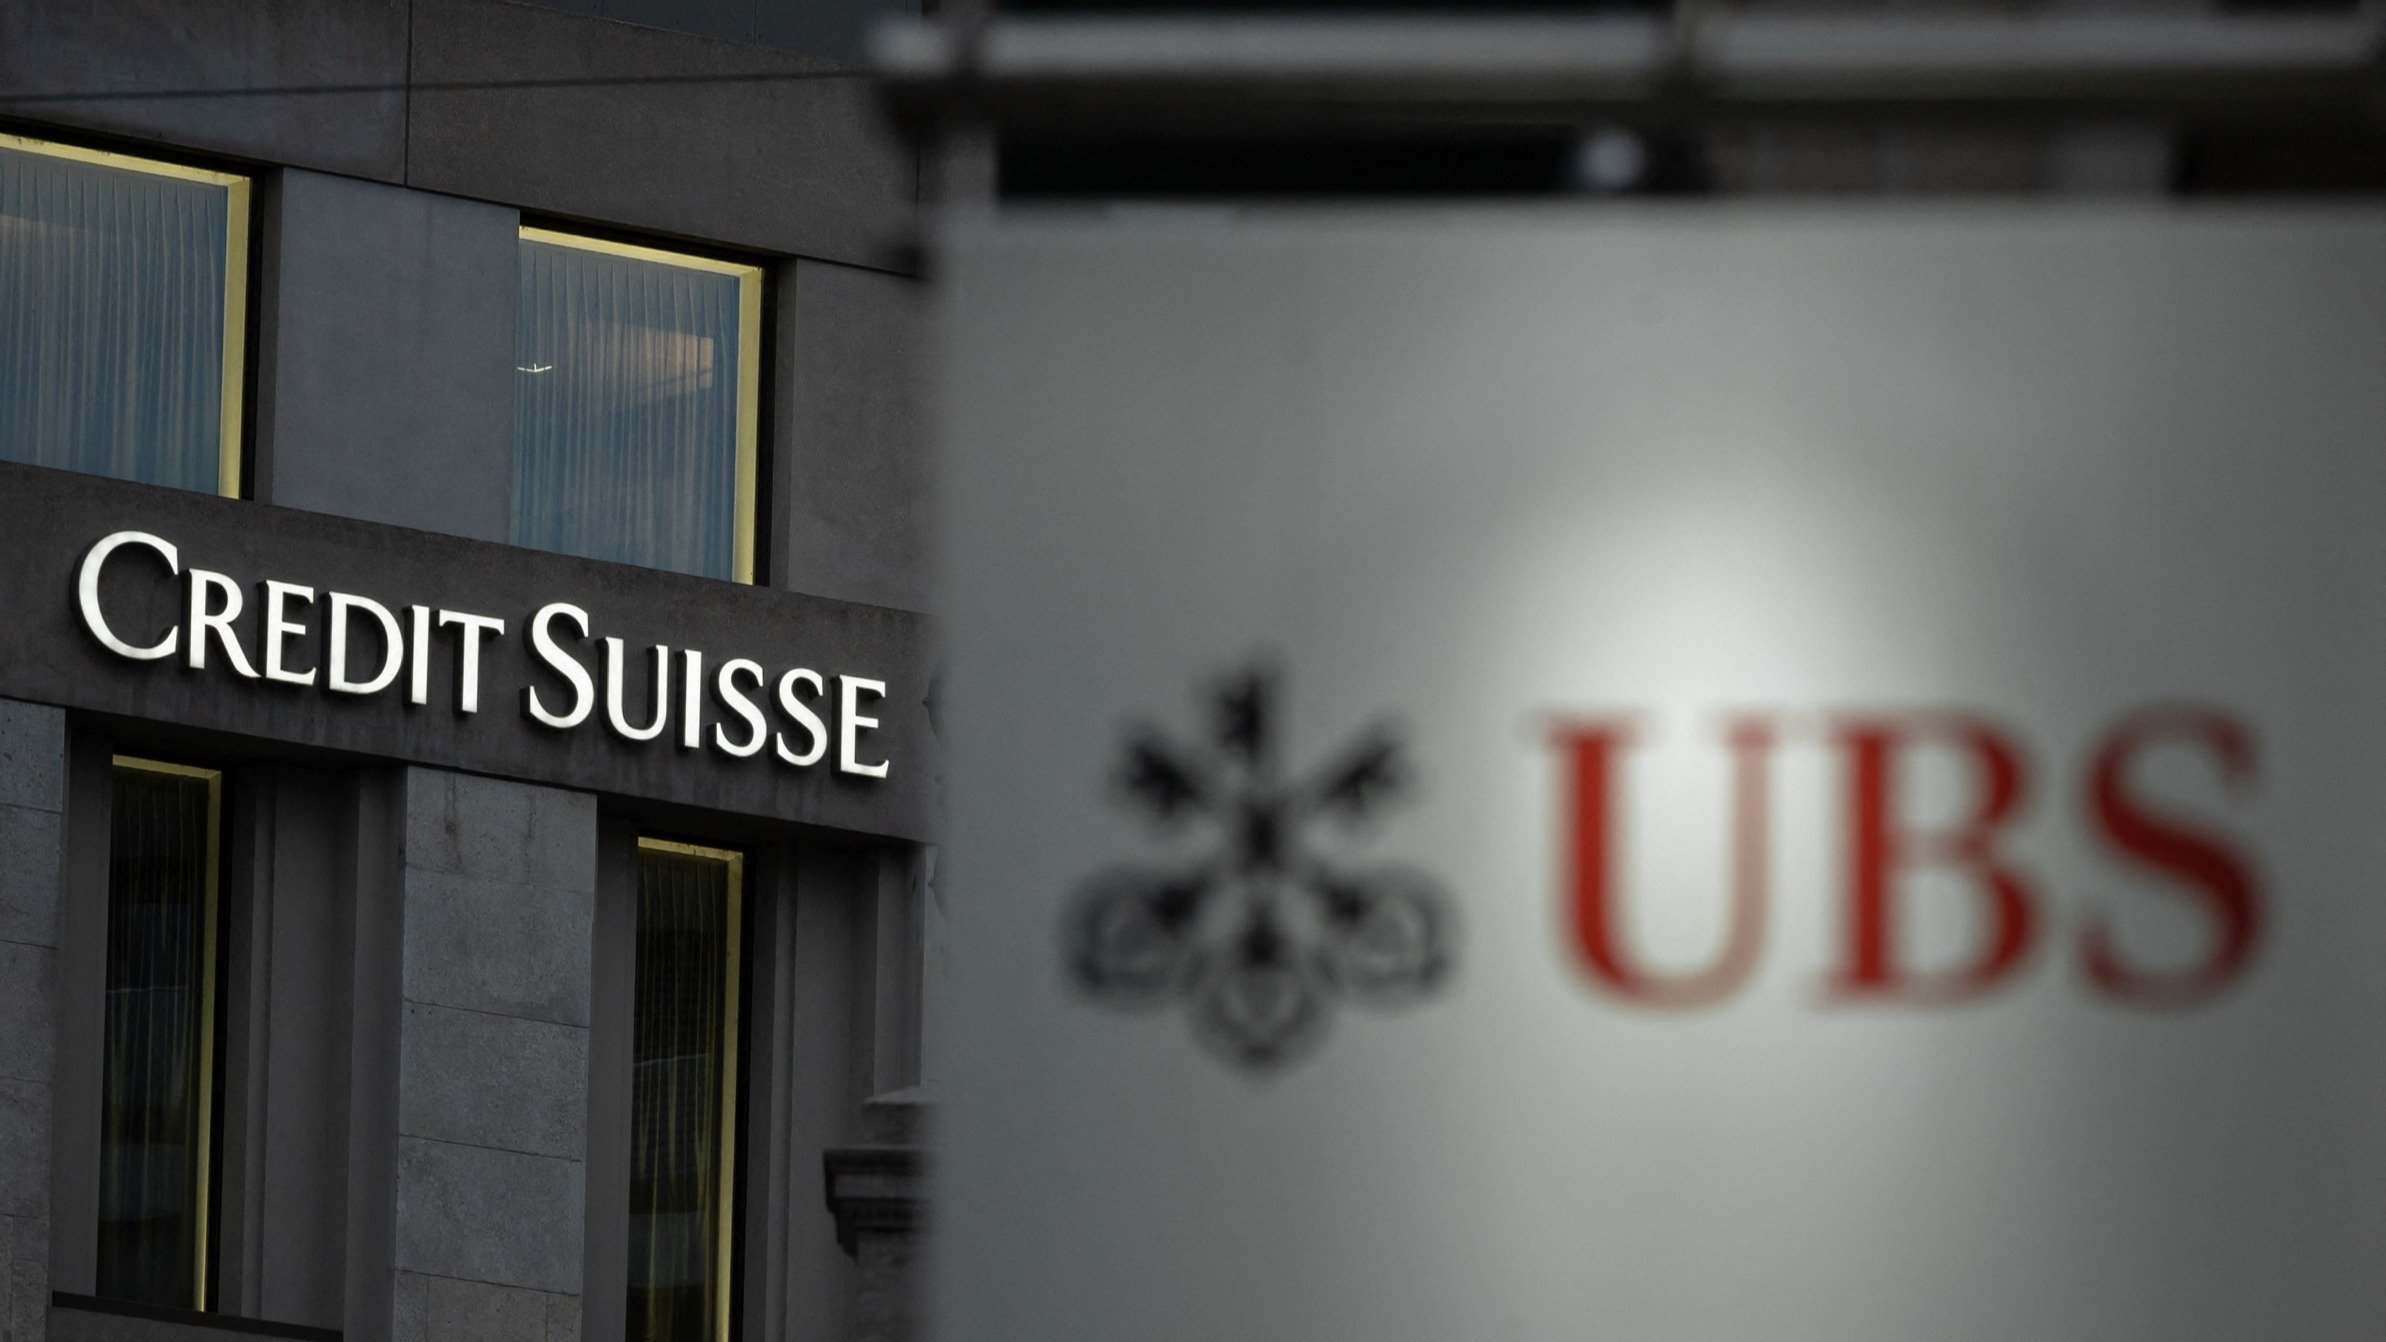  Preluarea Credit Suisse de către UBS e aproape parafată. Discuţiile se poartă în jurul unei garanţii de şase miliarde de dolari